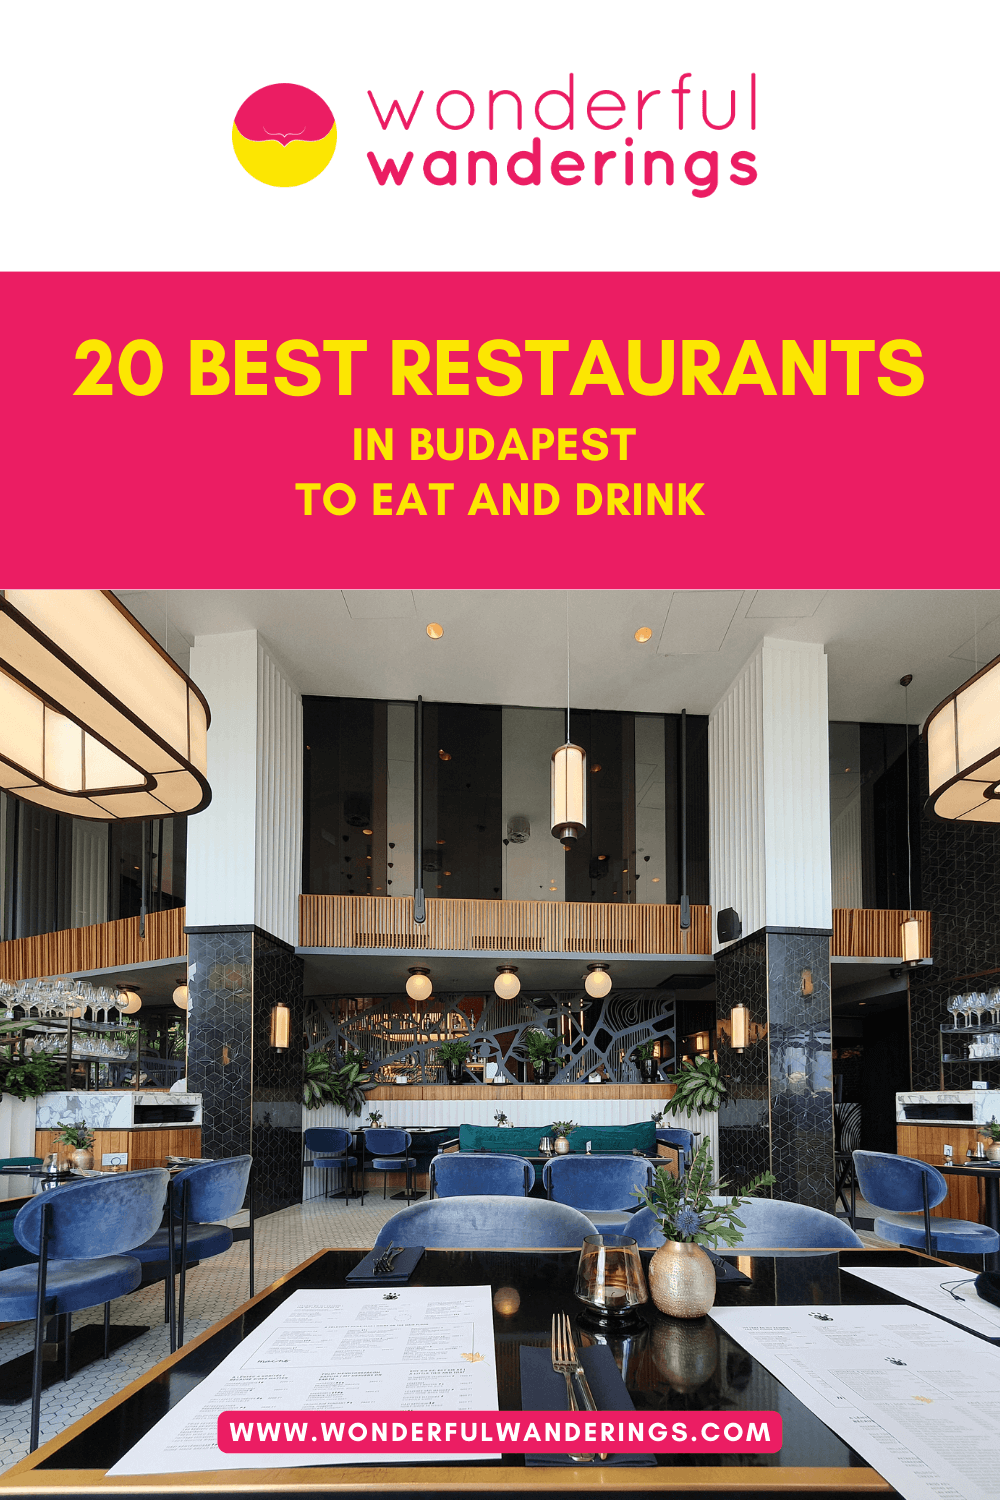 Budapest Restaurant Pinterest image